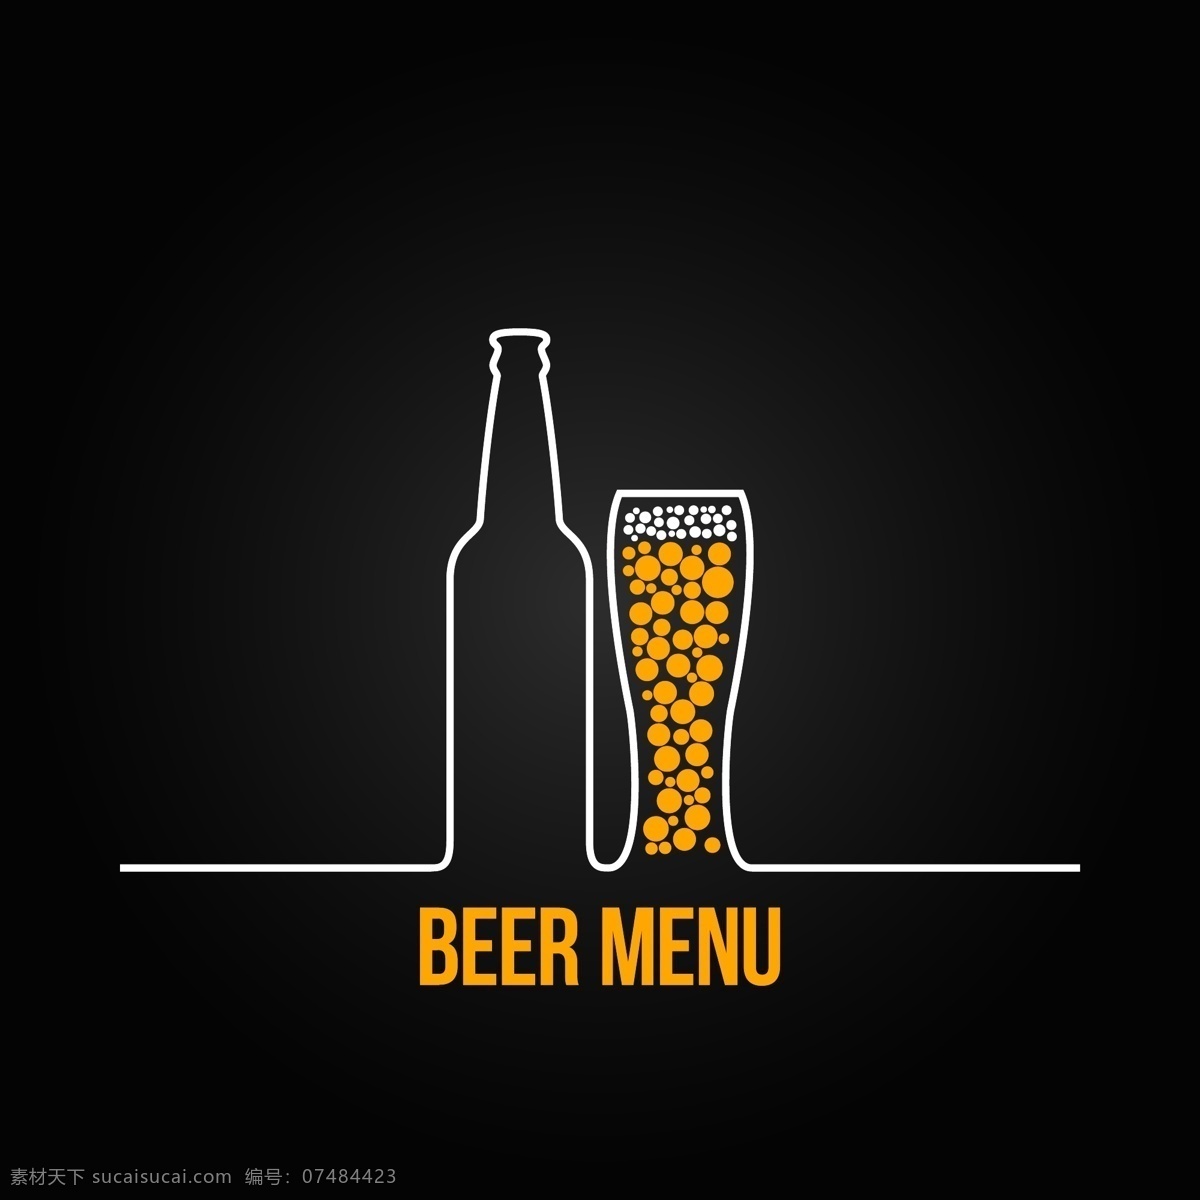 啤酒标志 酒瓶 酒杯 啤酒logo 行业标志 标志图标 矢量素材 黑色